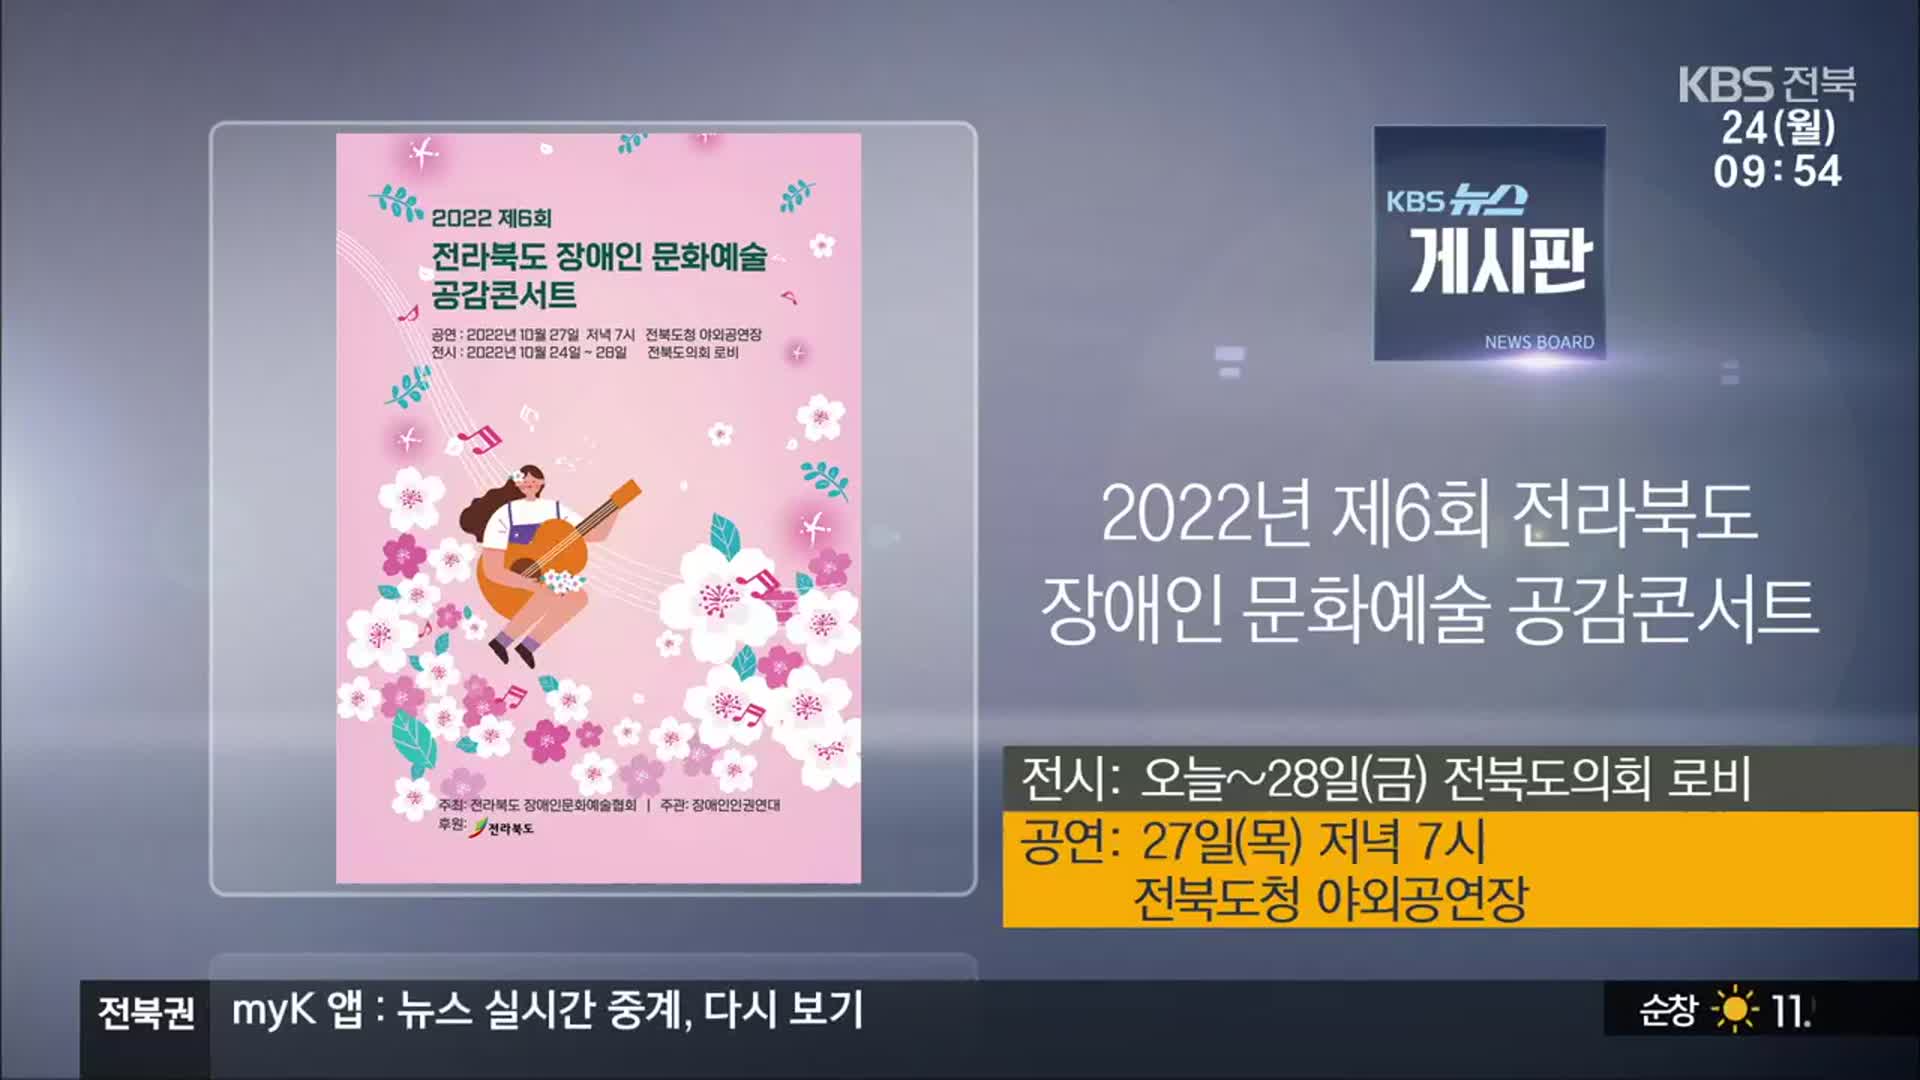 [게시판] 2022년 제6회 전라북도 장애인 문화예술 공감콘서트 외